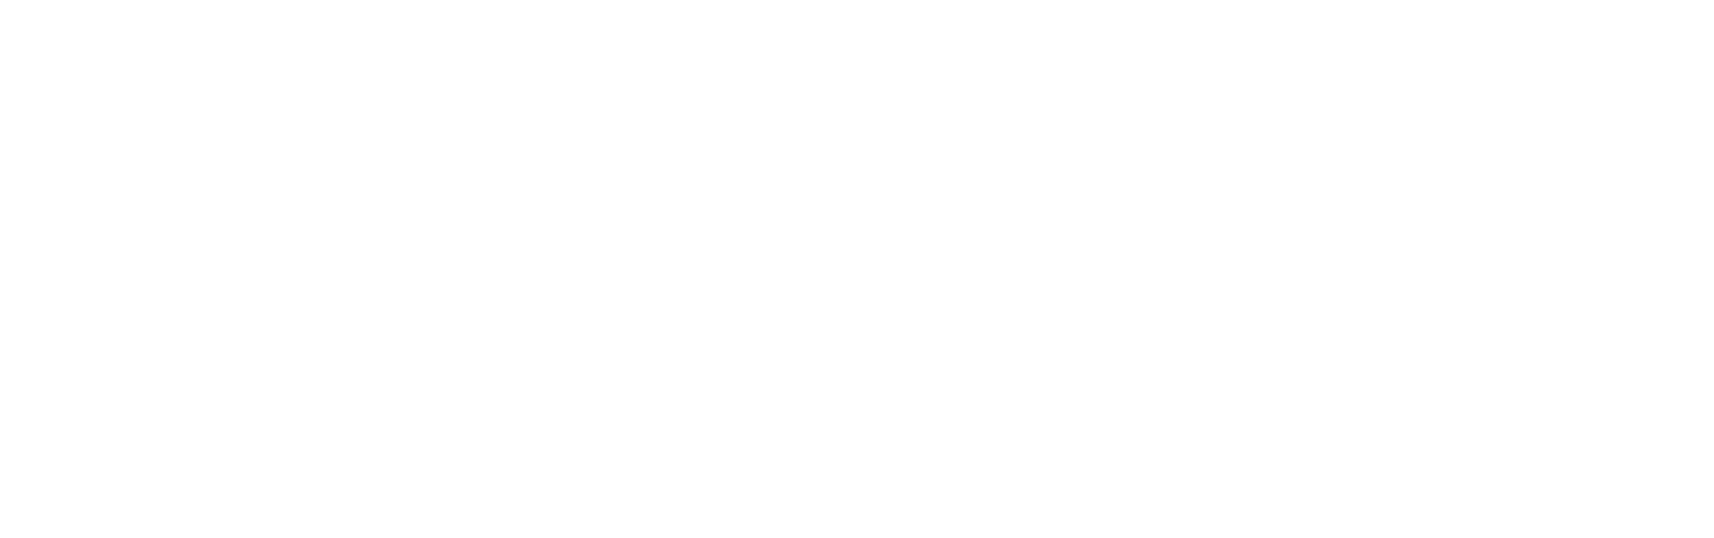 Prospero-Home-Winemaker-Depot-Logo-White